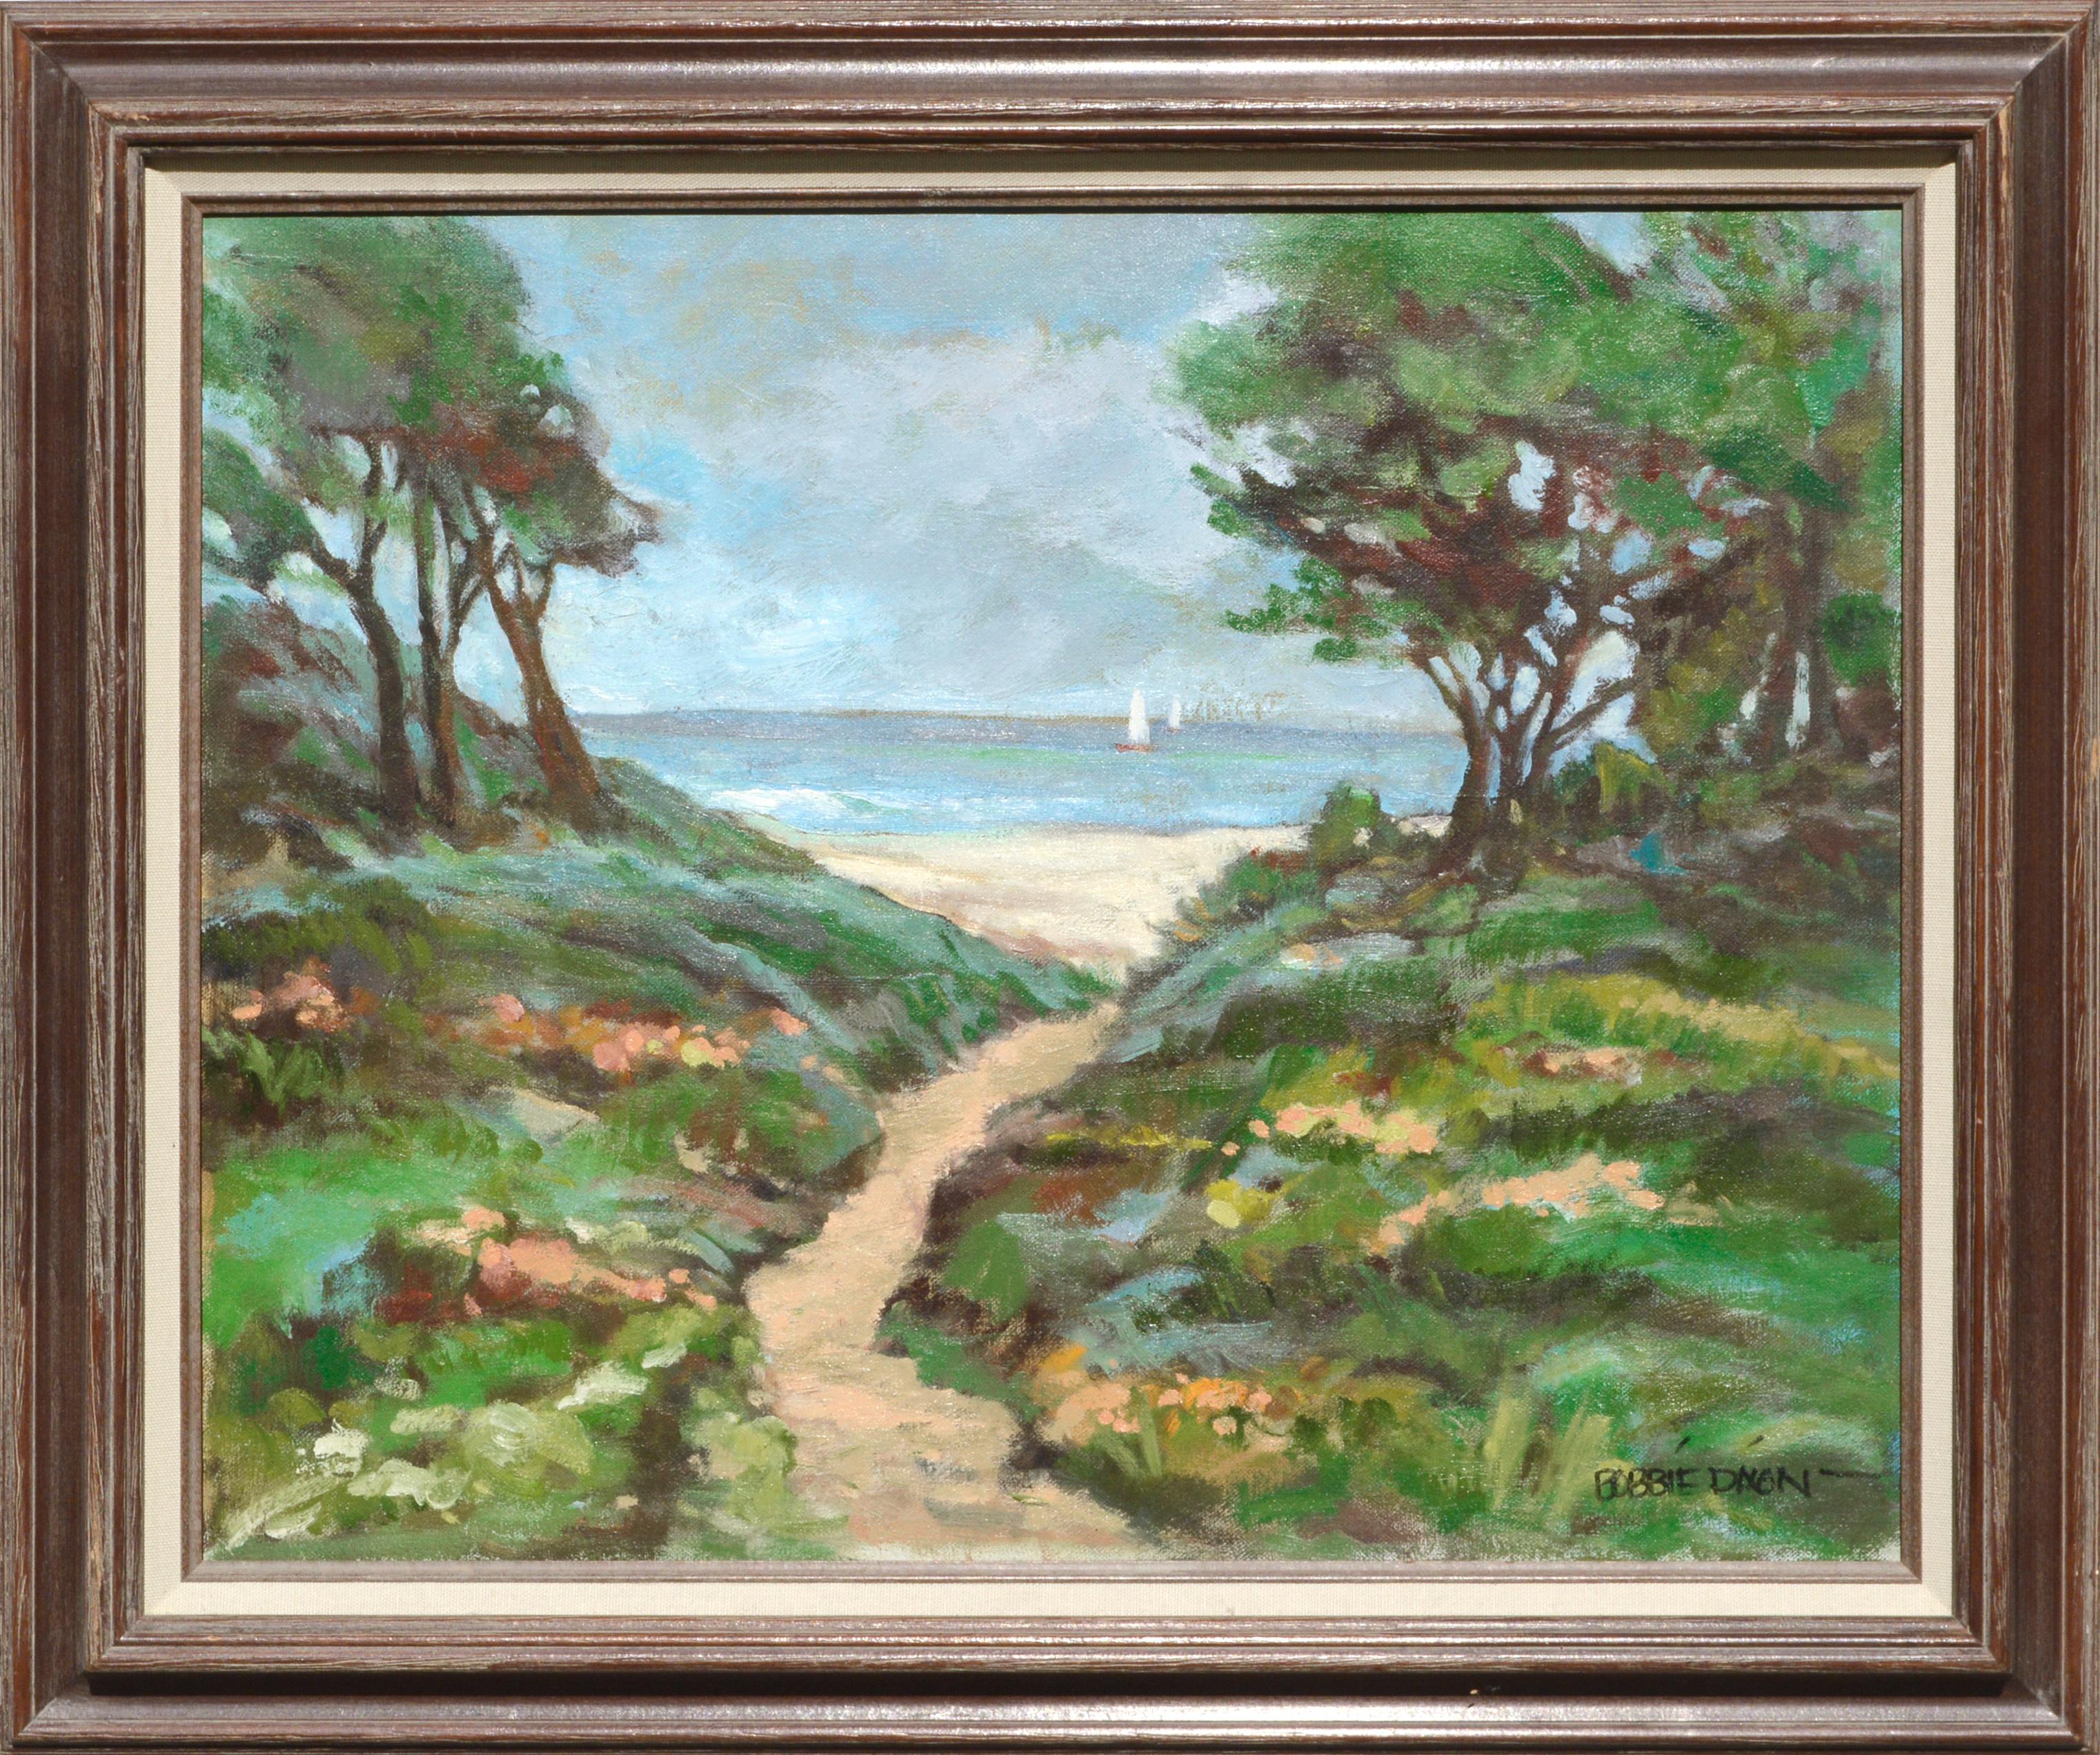 R. A. Bobbie Dixon Landscape Painting - Path to the Ocean - Landscape